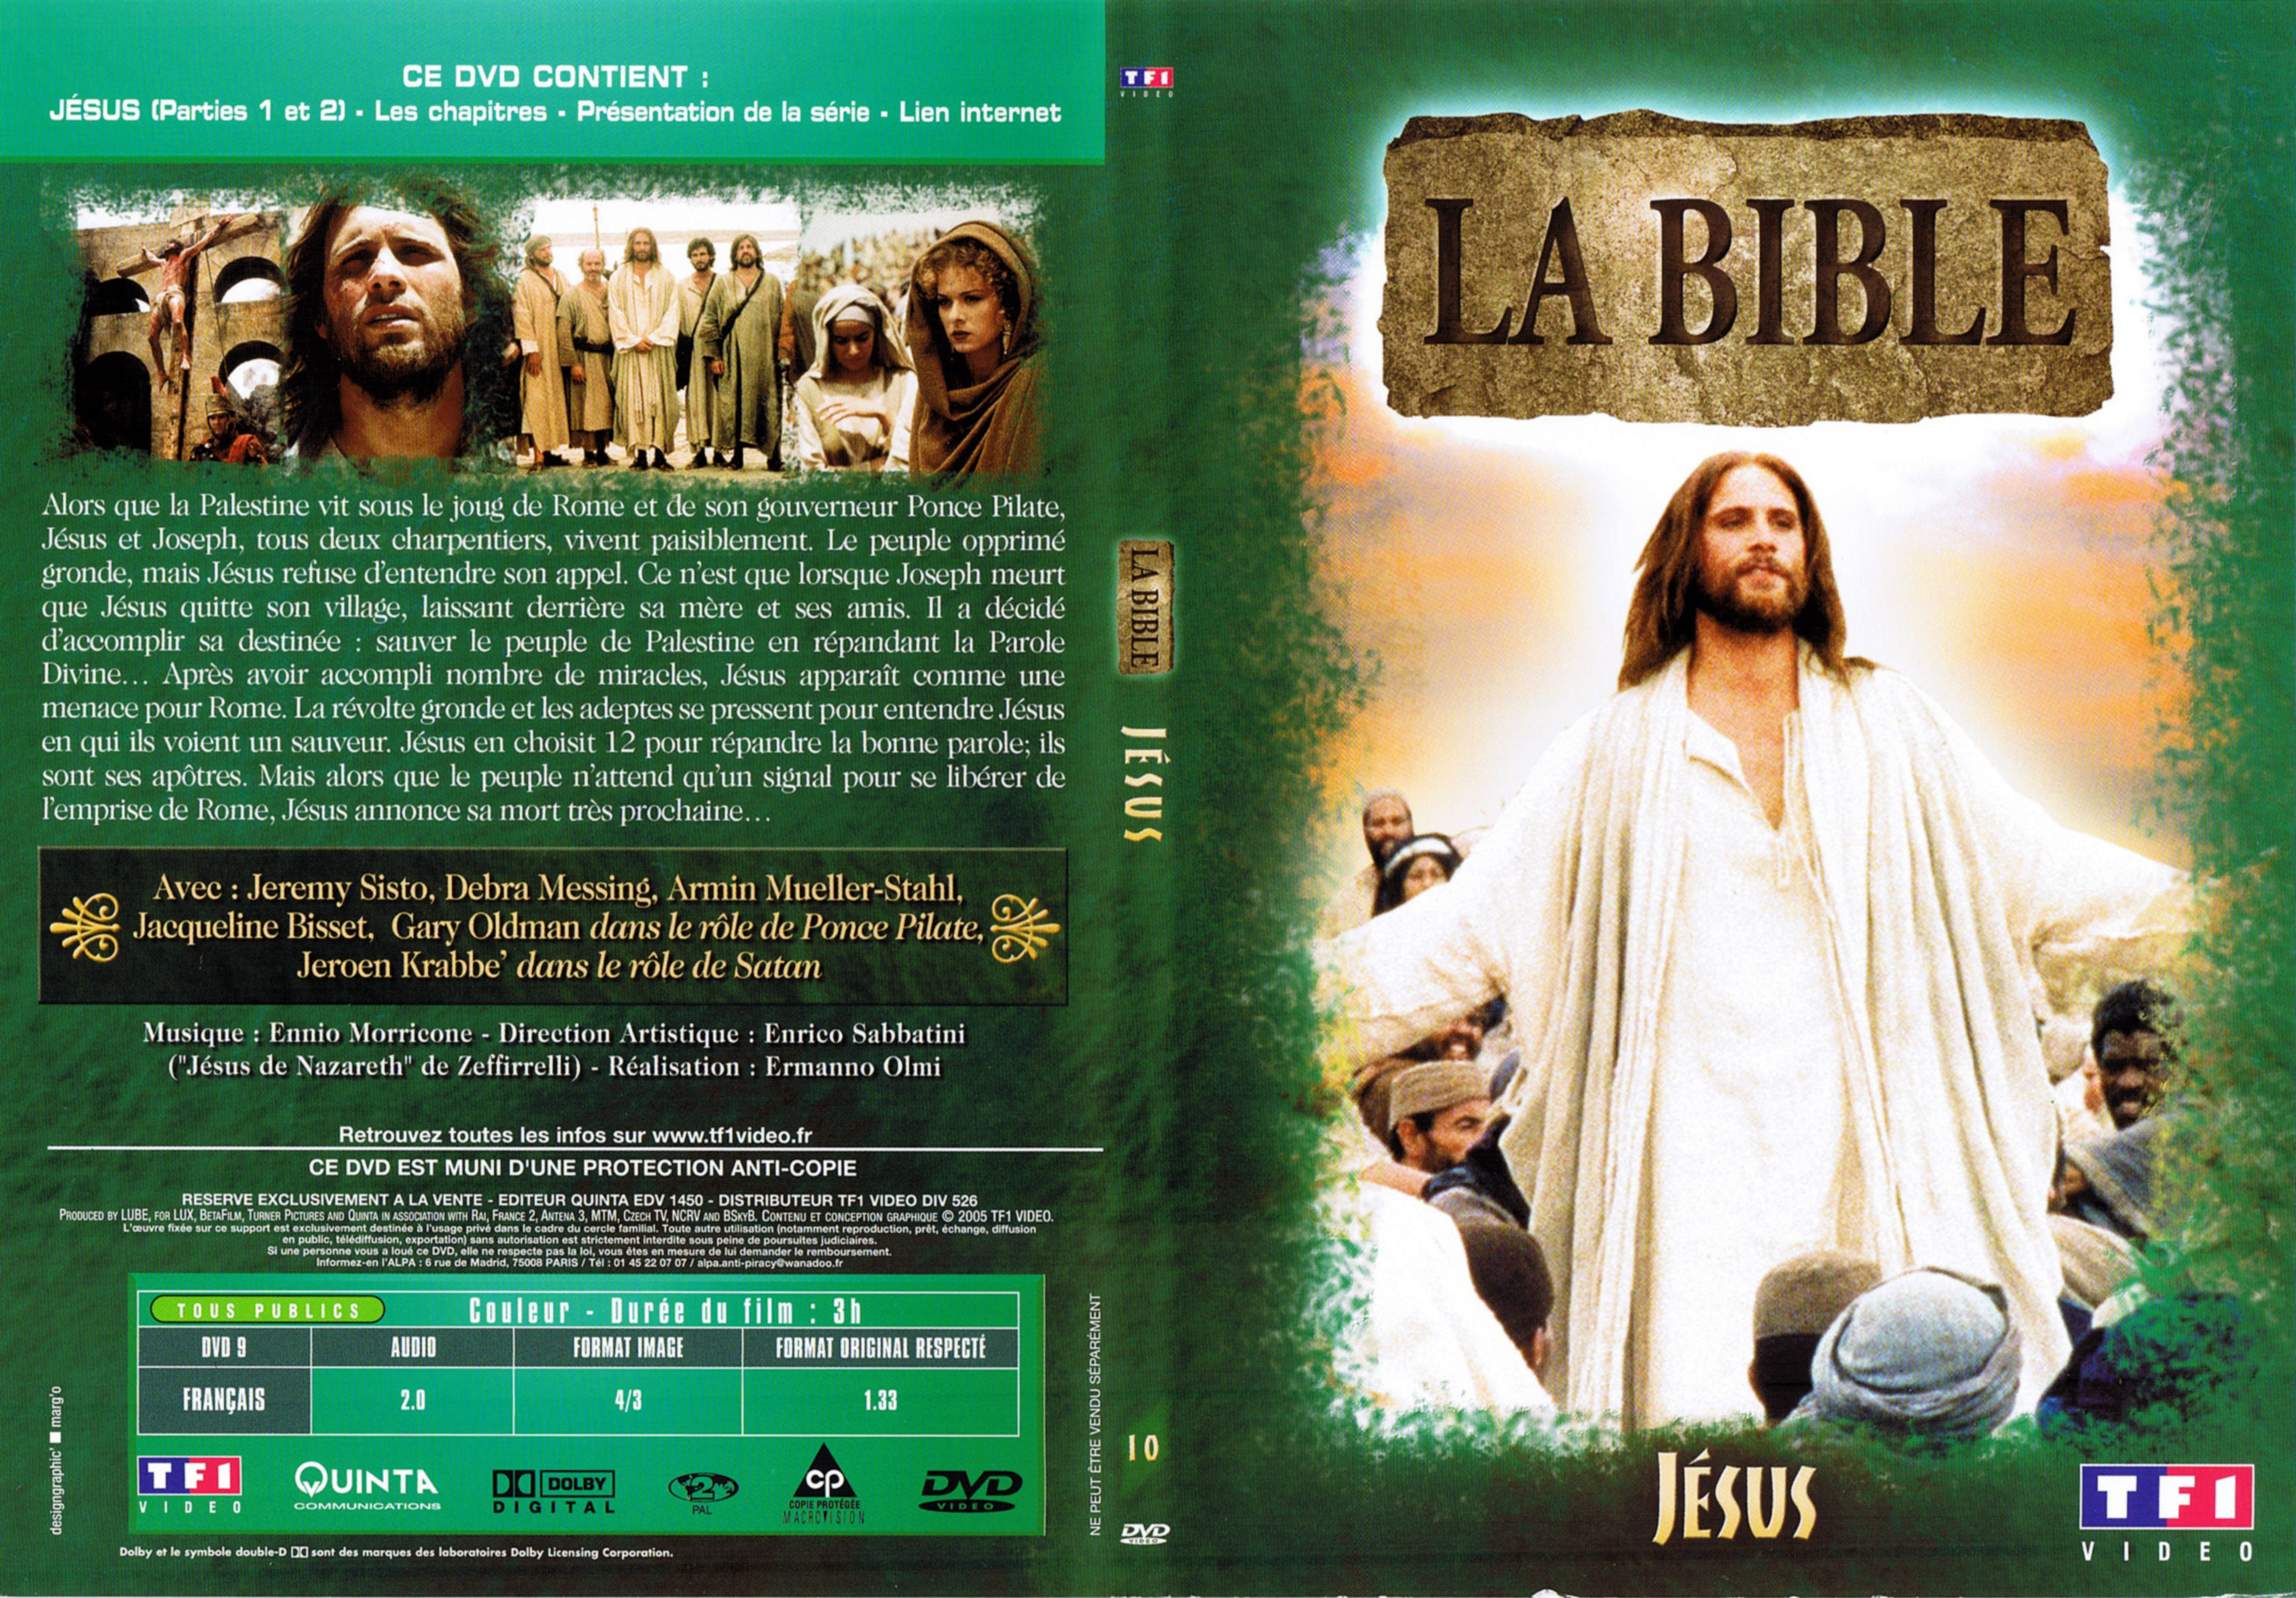 Jaquette DVD La bible - Jsus